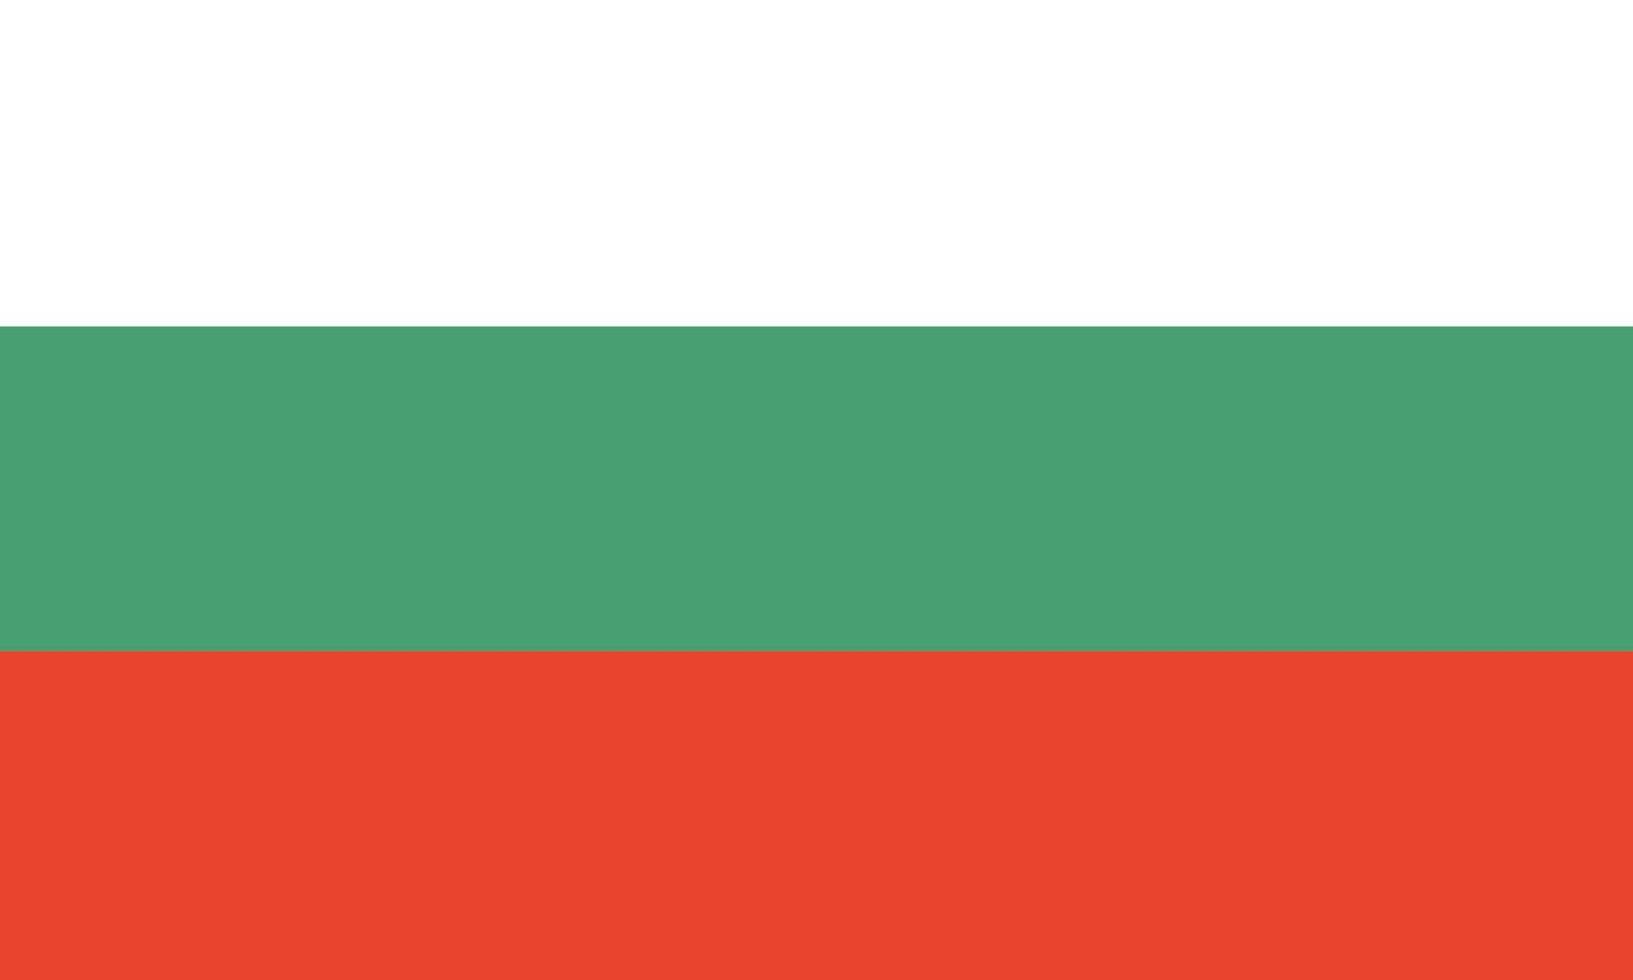 bandera de bulgaria colores y proporciones oficiales. bandera nacional de bulgaria. vector